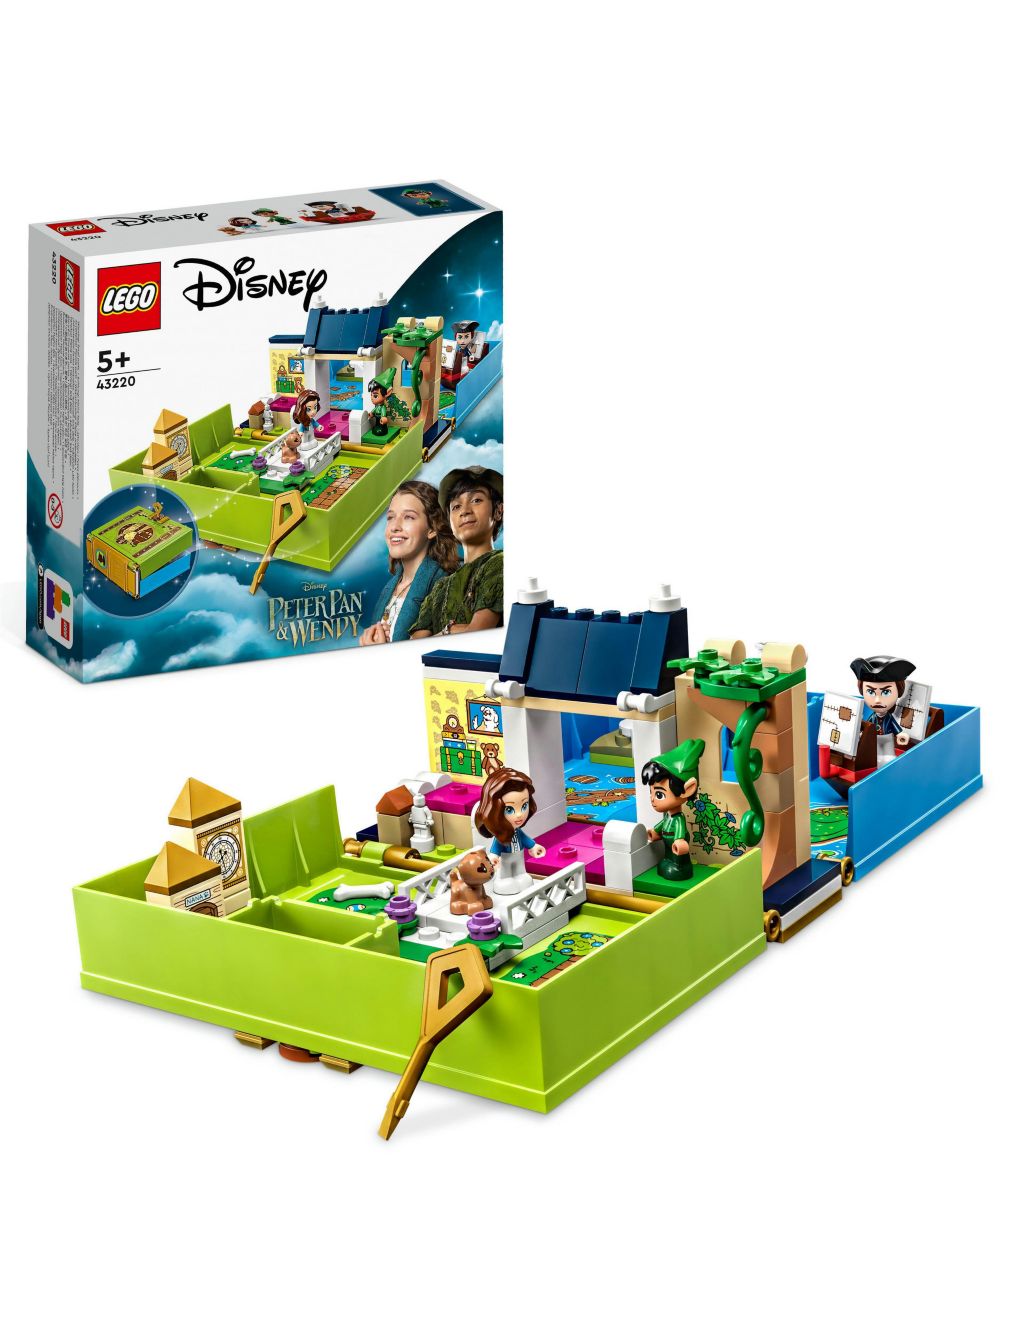 LEGO | Disney Peter Pan & Wendy Storybook Set 43220 (5+ Yrs)